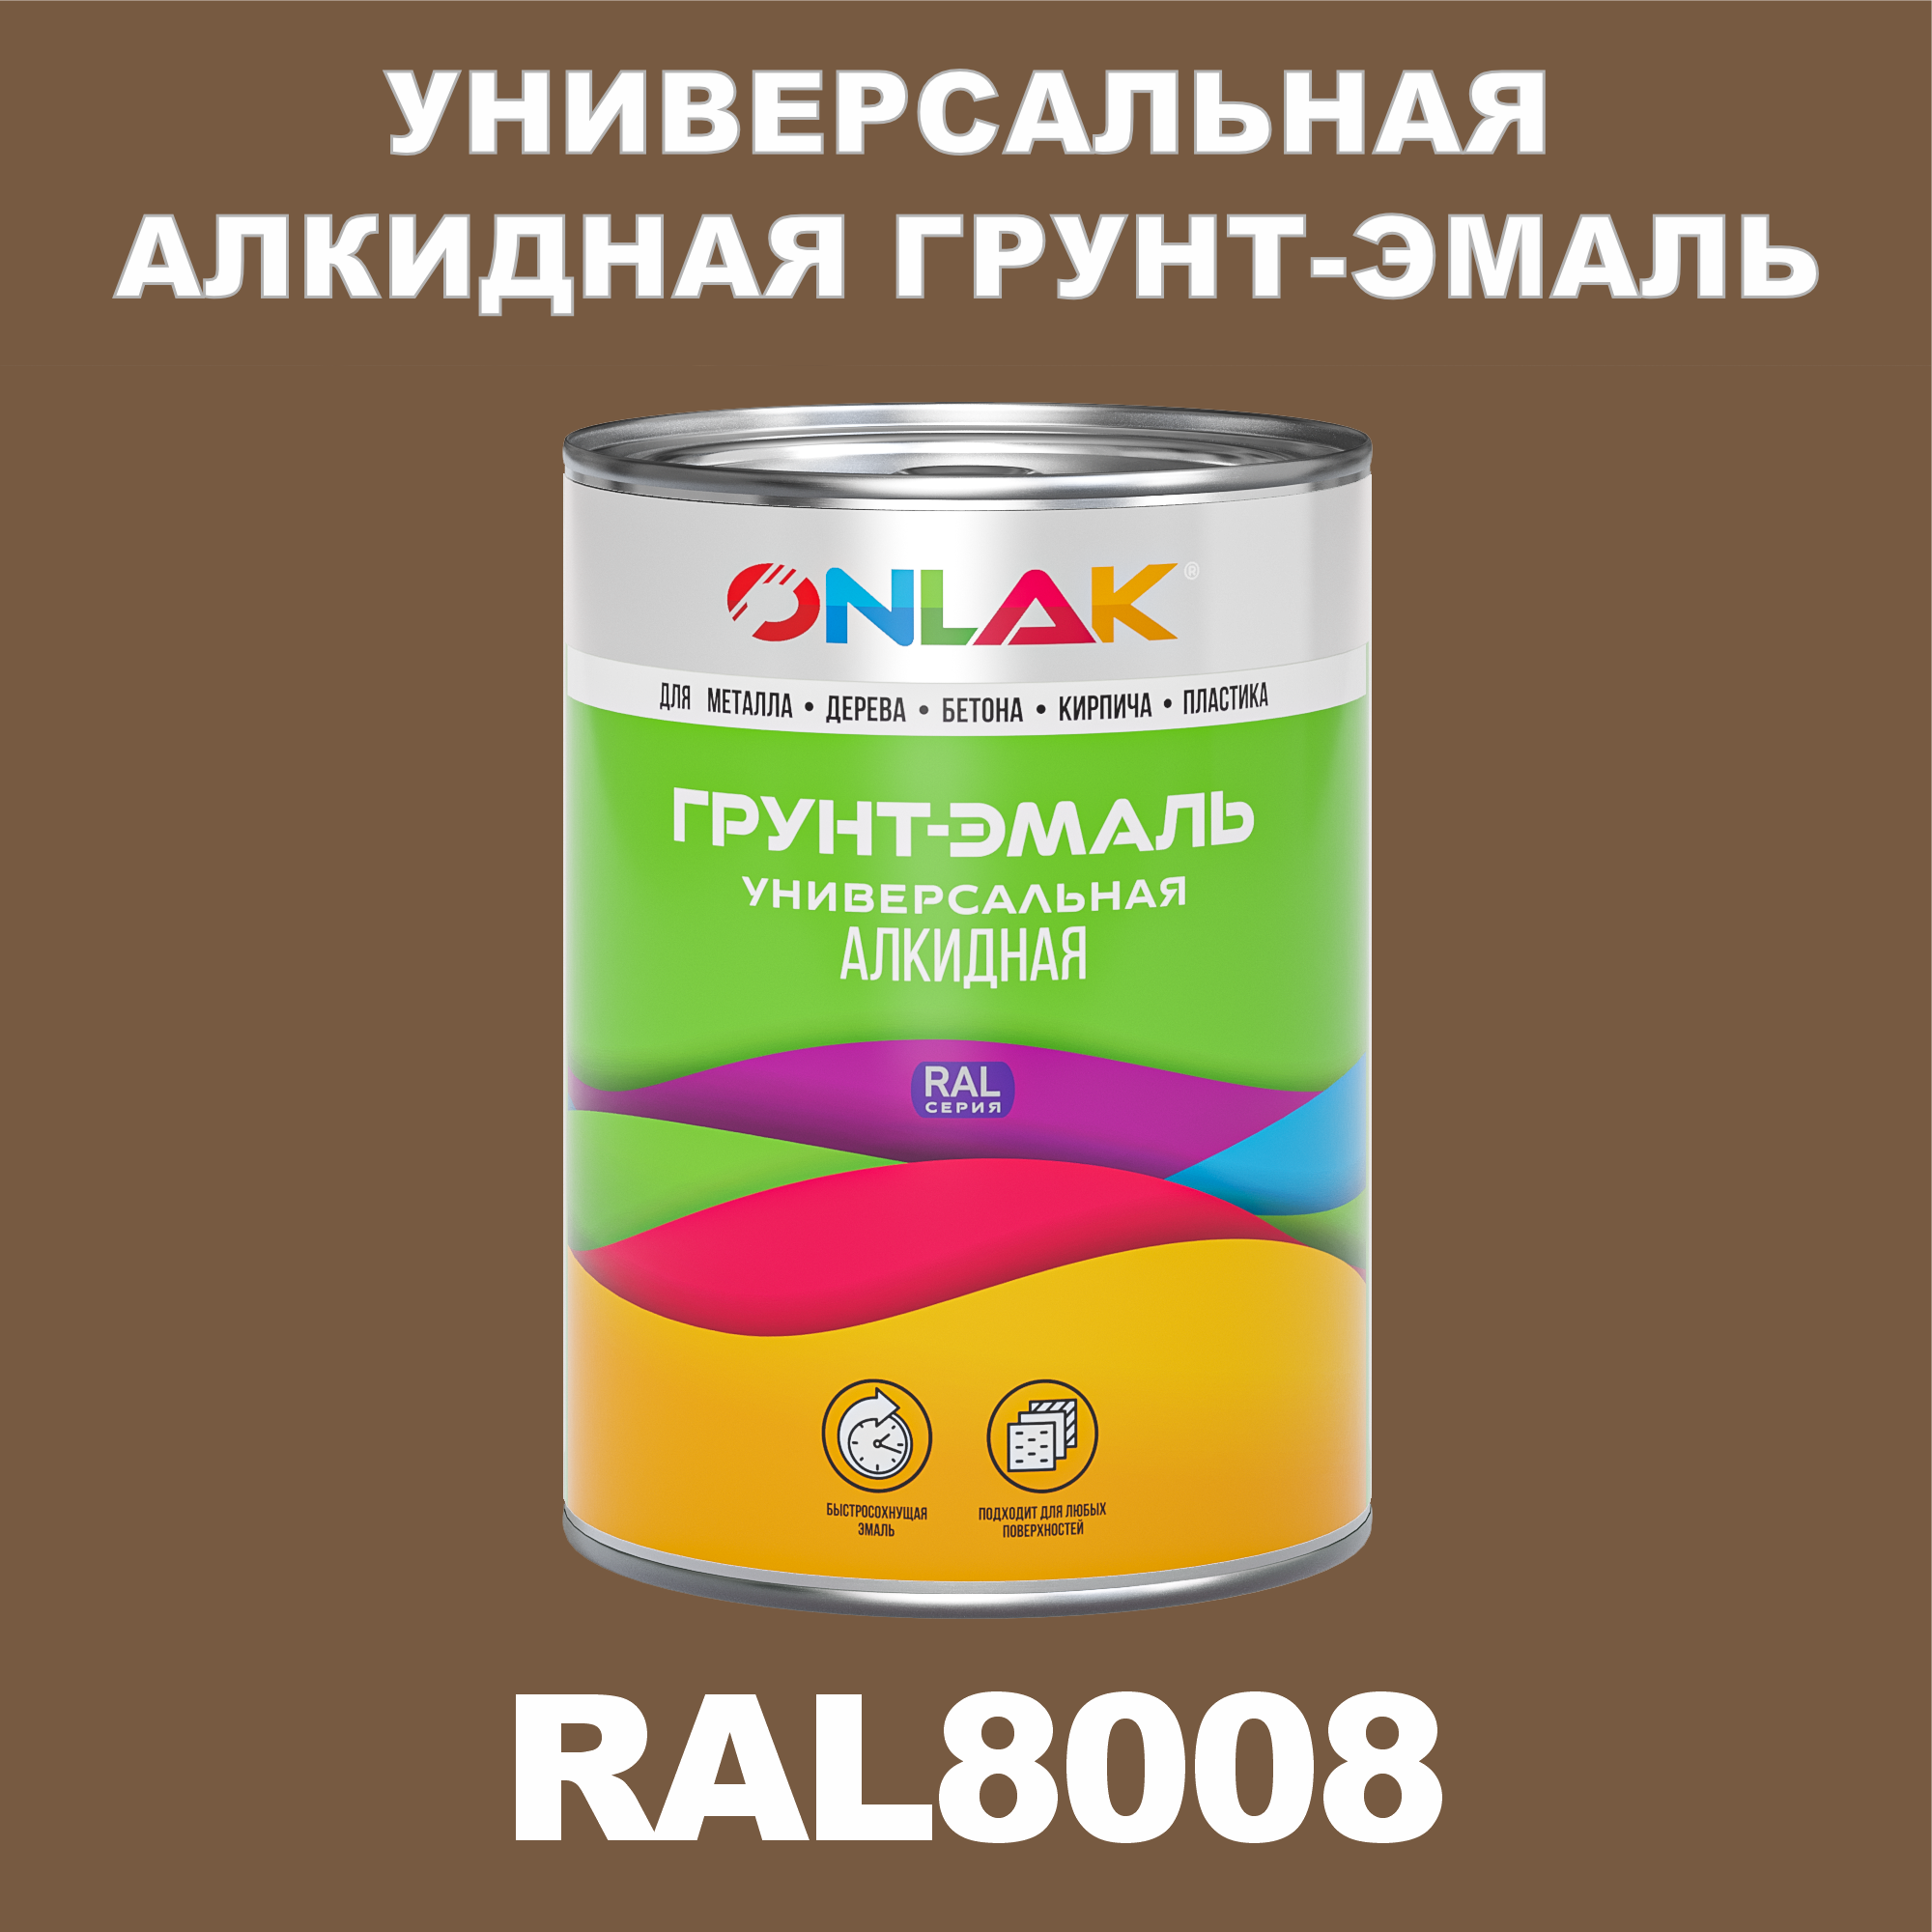 Грунт-эмаль ONLAK 1К RAL8008 антикоррозионная алкидная по металлу по ржавчине 1 кг грунт эмаль аэрозольная престиж 3в1 алкидная коричневая ral 8017 425 мл 0 425 кг